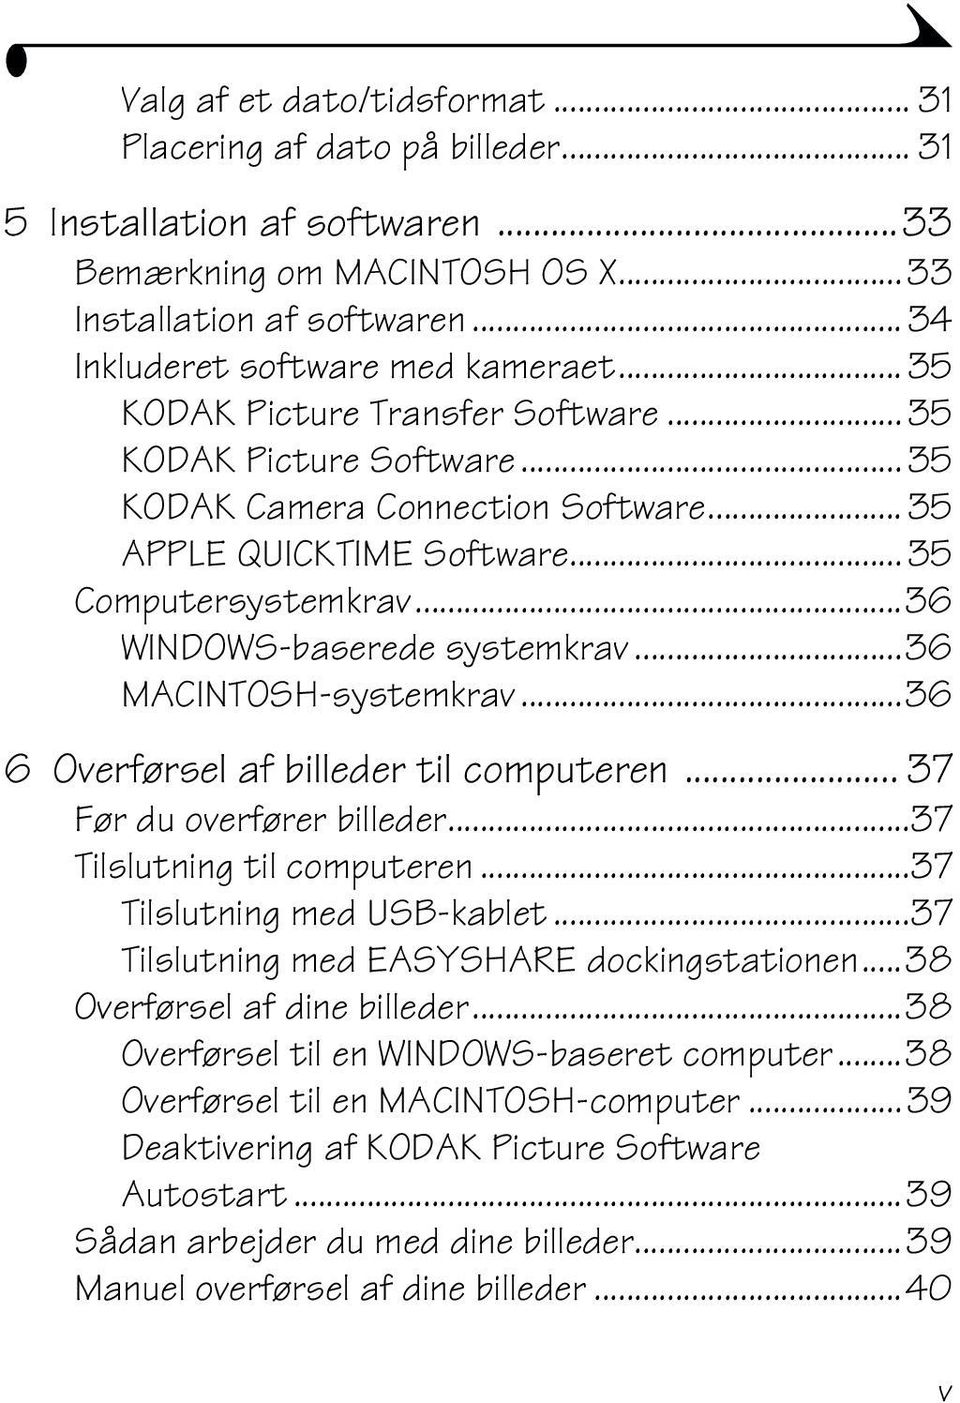 ..36 MACINTOSH-systemkrav...36 6 Overførsel af billeder til computeren... 37 Før du overfører billeder...37 Tilslutning til computeren...37 Tilslutning med USB-kablet.